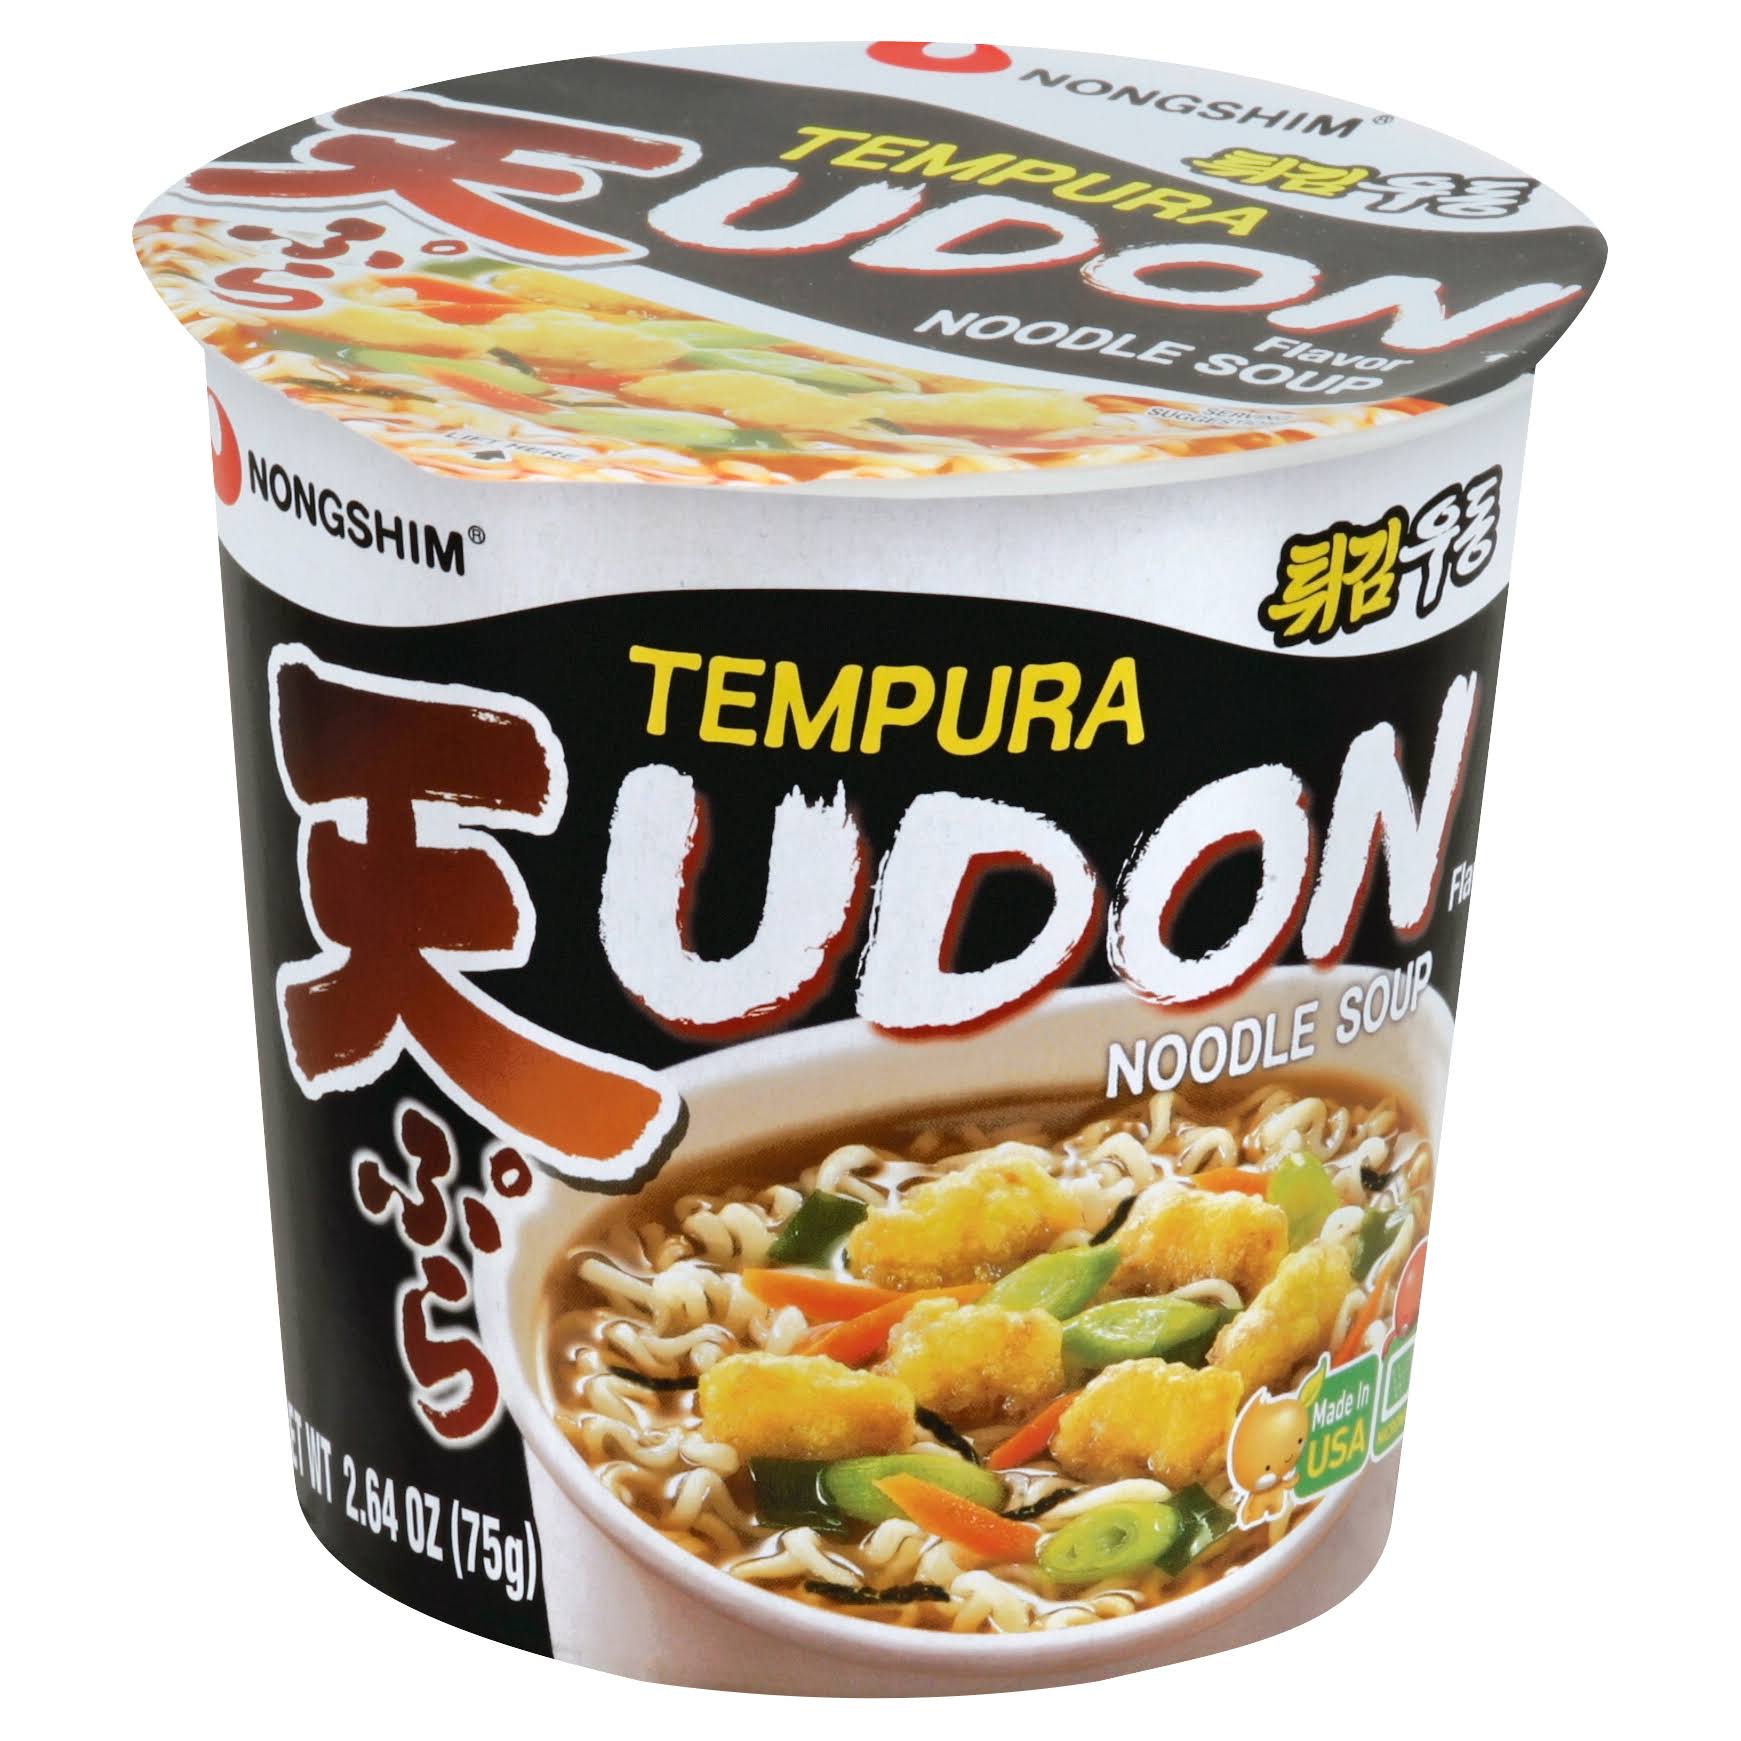 Nongshim Noodle Soup, Tempura Udon Flavor - 2.64 oz